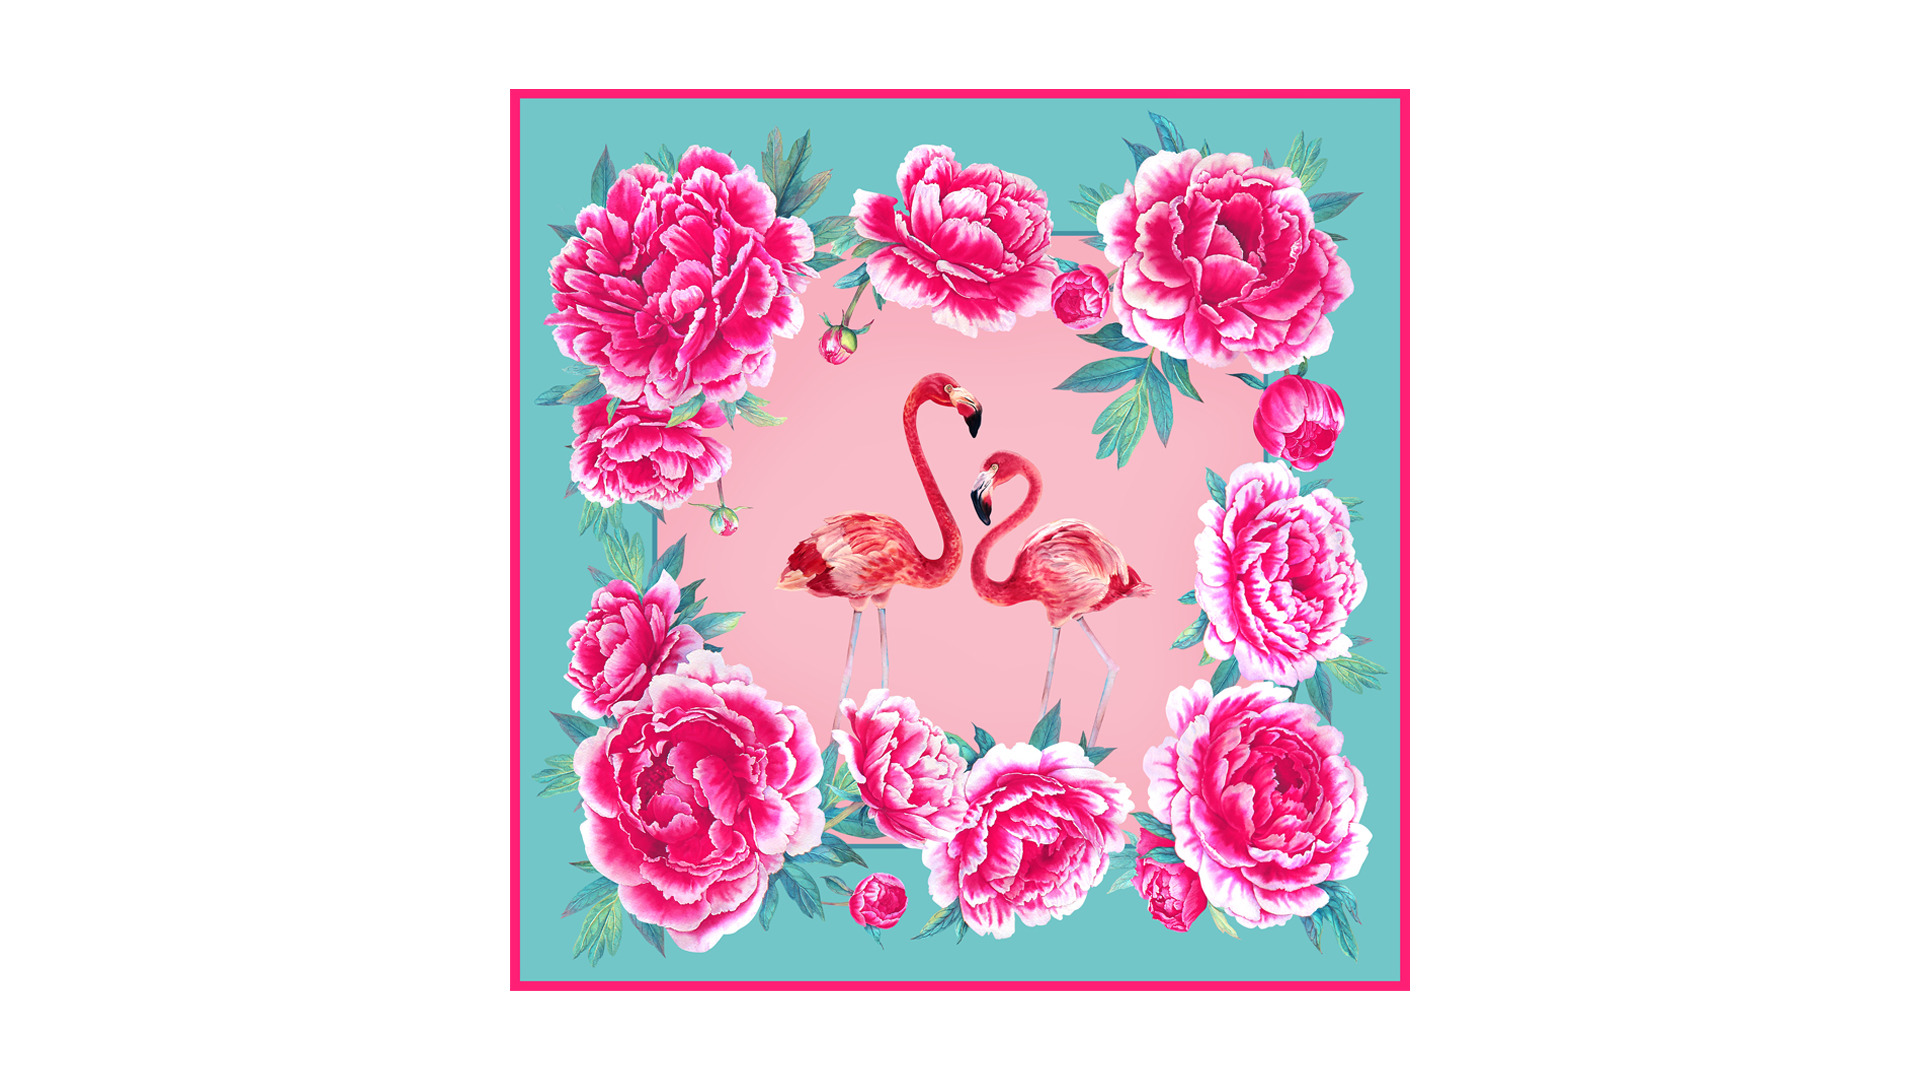 сувенирный МД Нины Ручкиной платок Фламинго 90х90 см, шелк